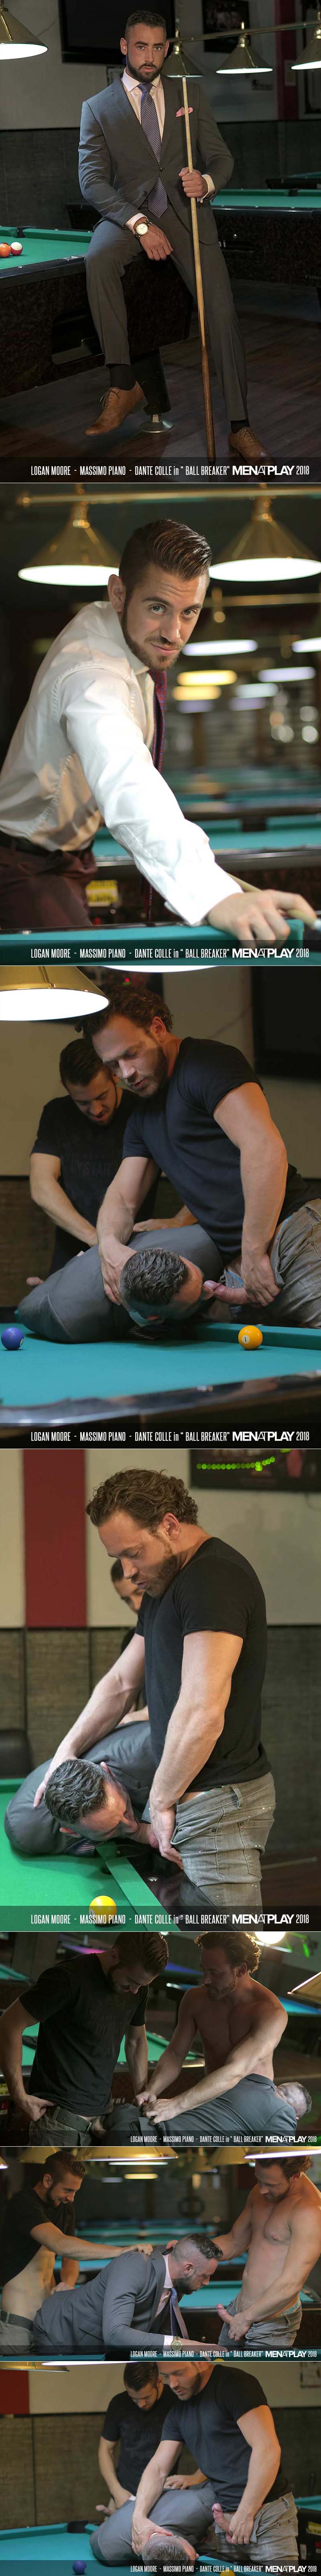 Ball Breaker (Dante Colle, Logan Moore and Massimo Piano) on MenAtPlay